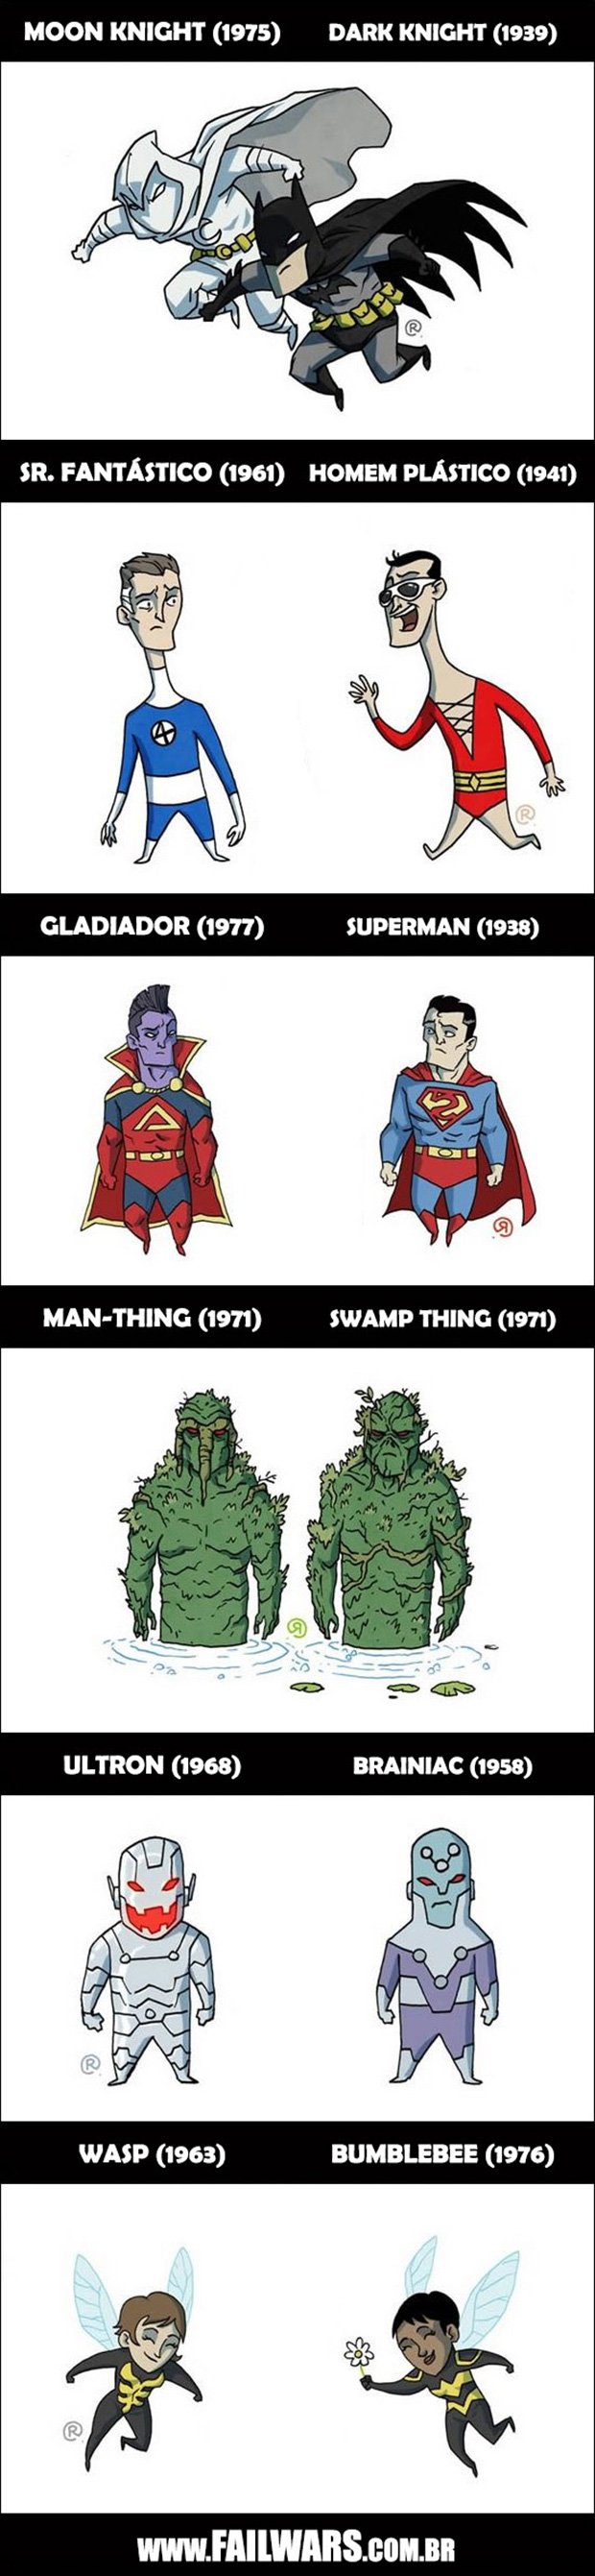 Personagens-equivalentes-entre-Marvel-e-DC-2_03